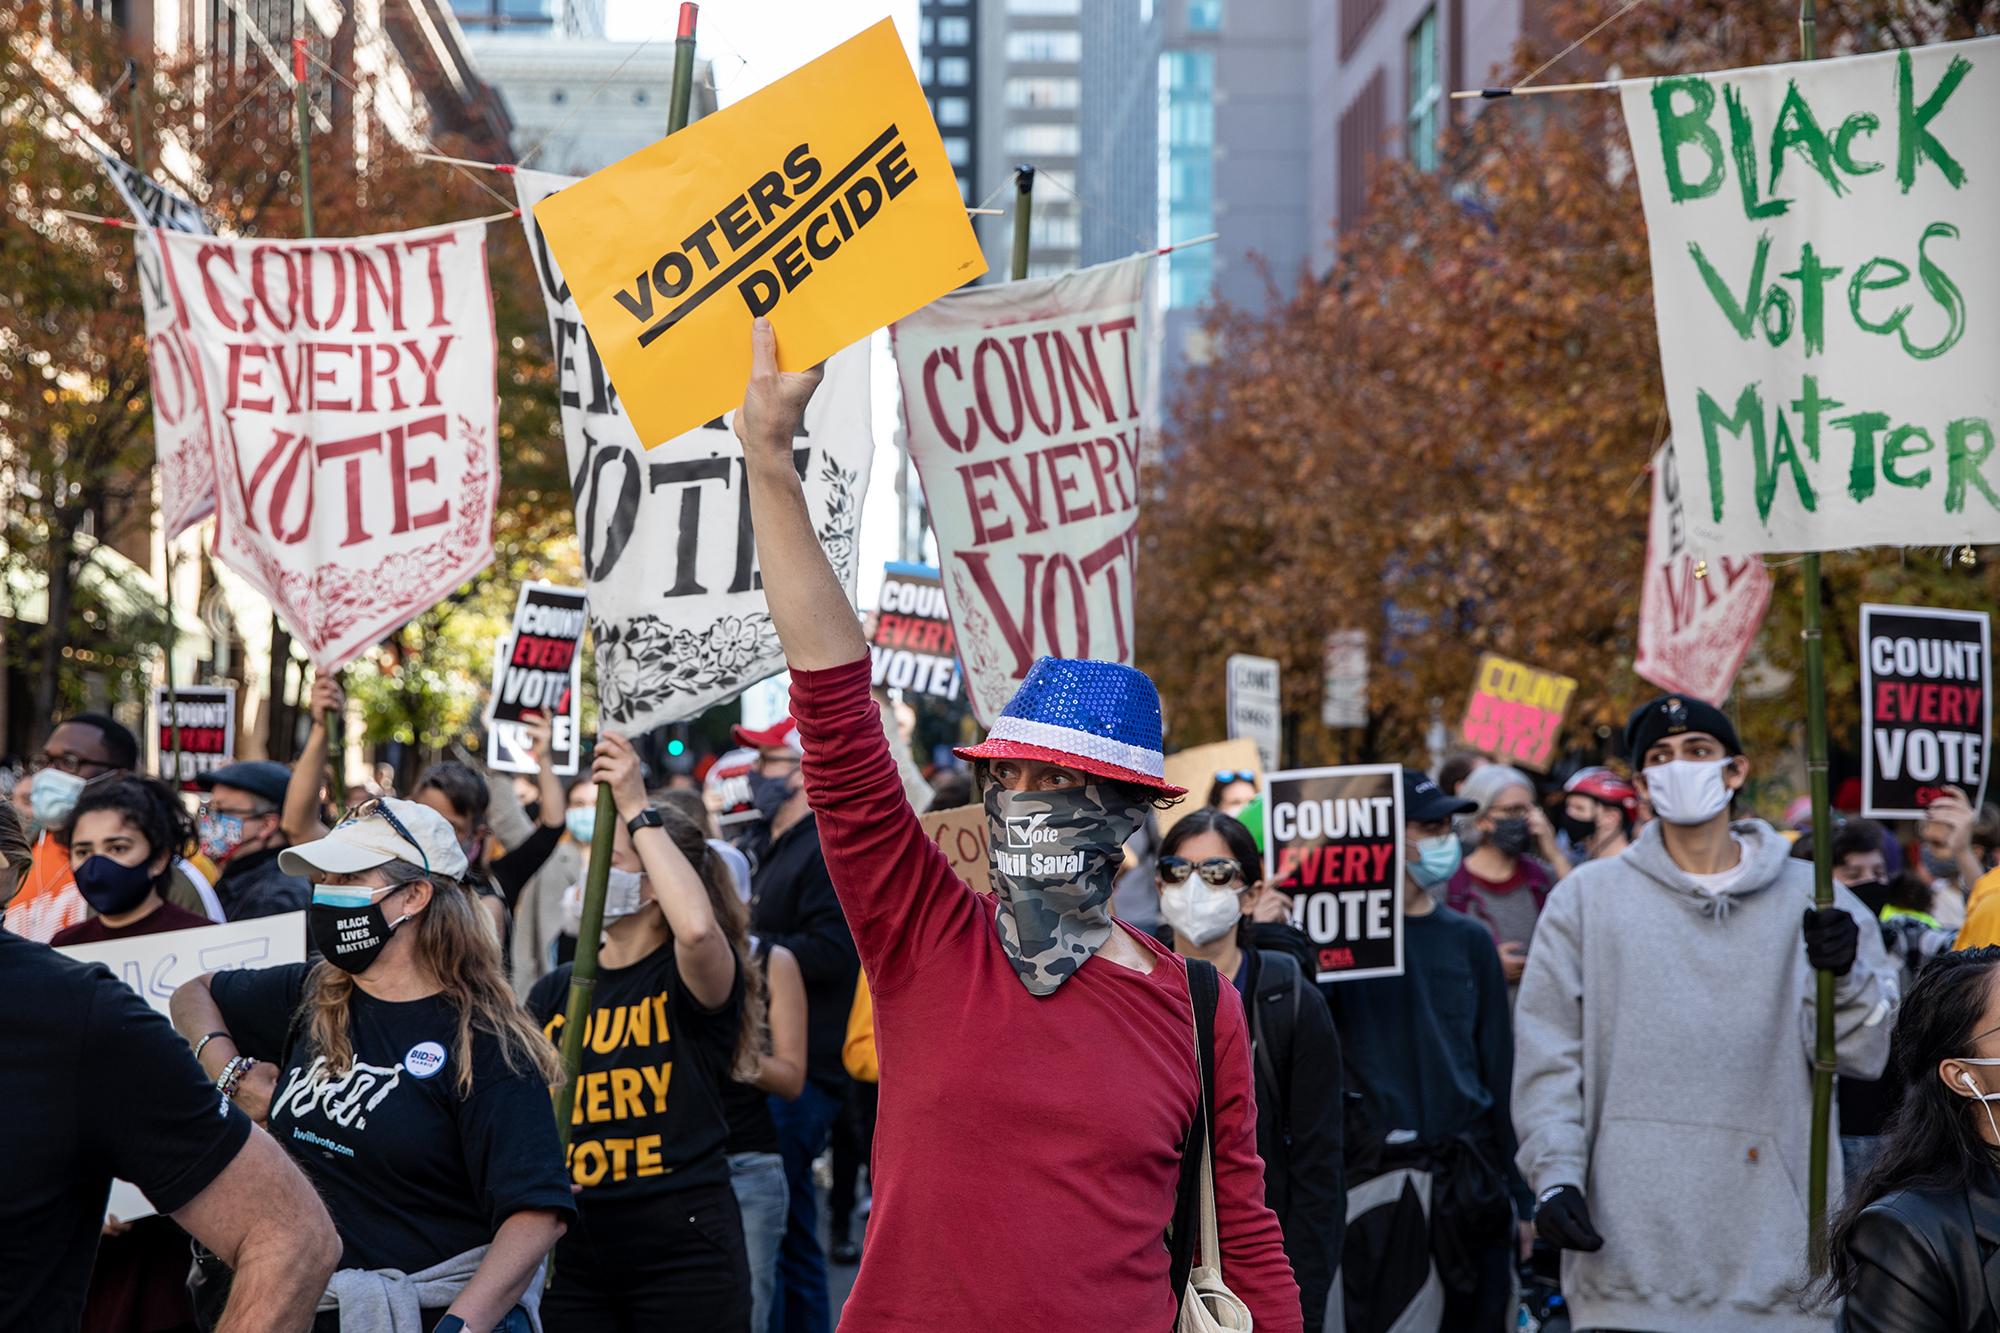 Cientos de personas participan en una protesta a favor del recuento de todos los votos en la elección presidencial estadounidense, el 5 de noviembre de 2020 en Filadelfia, Pensilvania. Chris McGrath / Getty Images / AFP